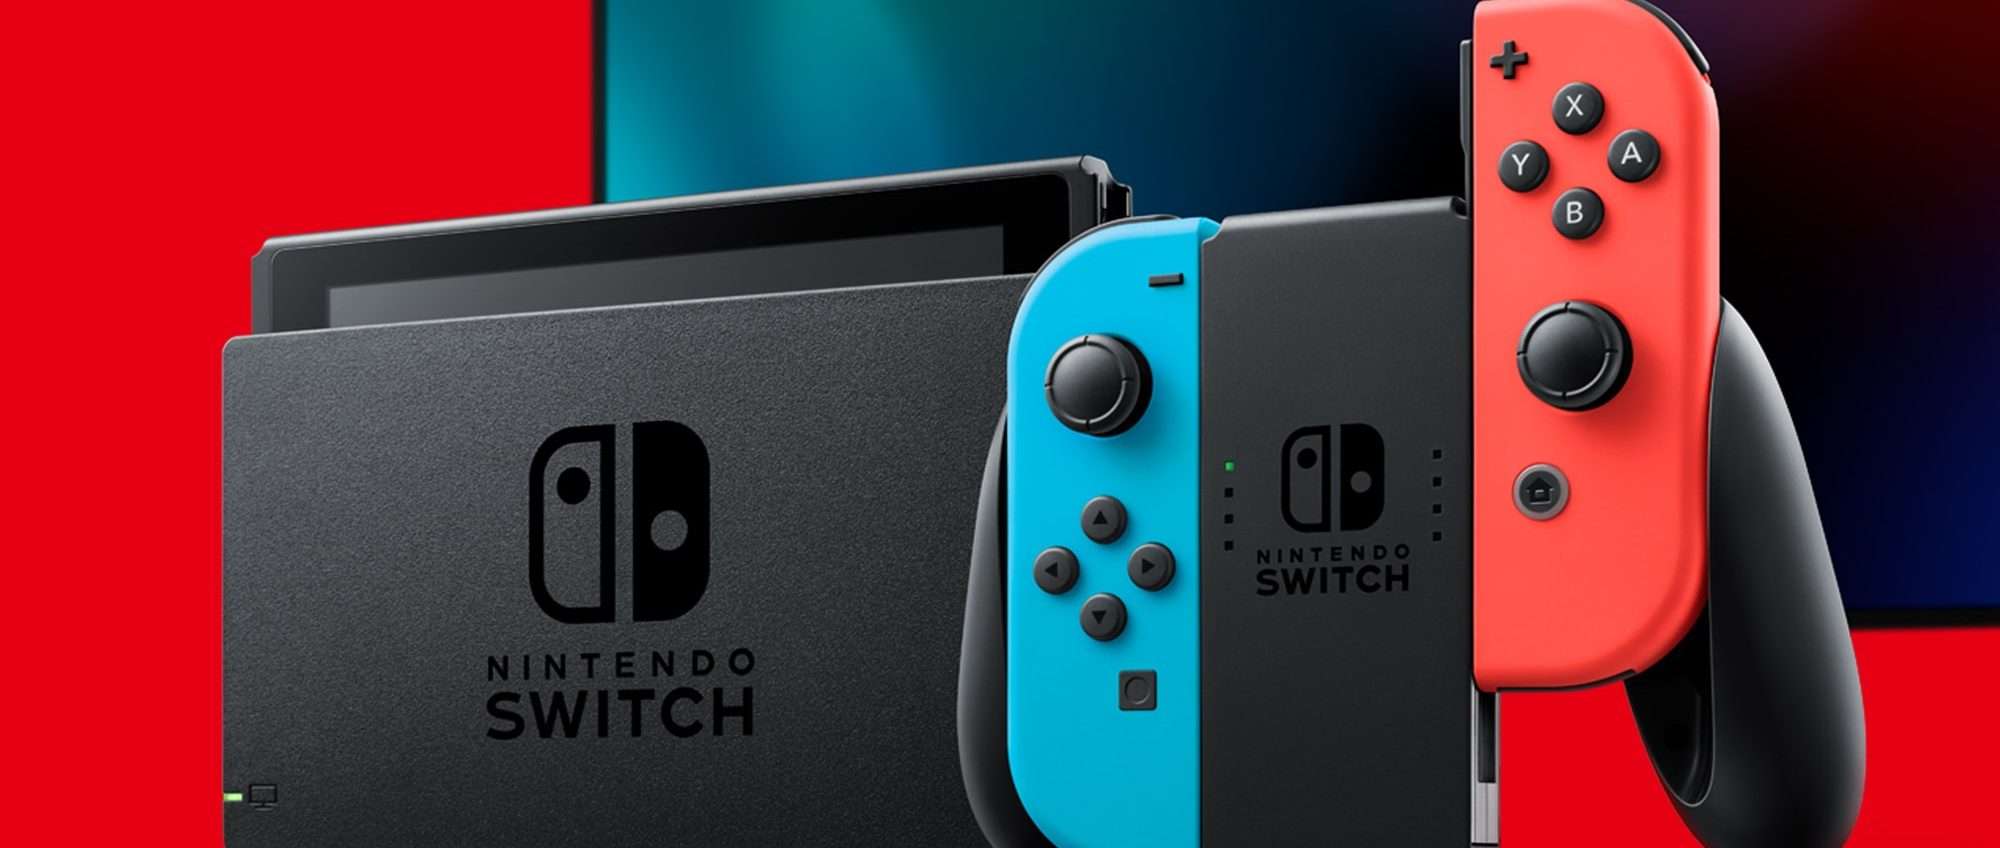 Nintendo Switch in offerta al prezzo più basso del web su Amazon